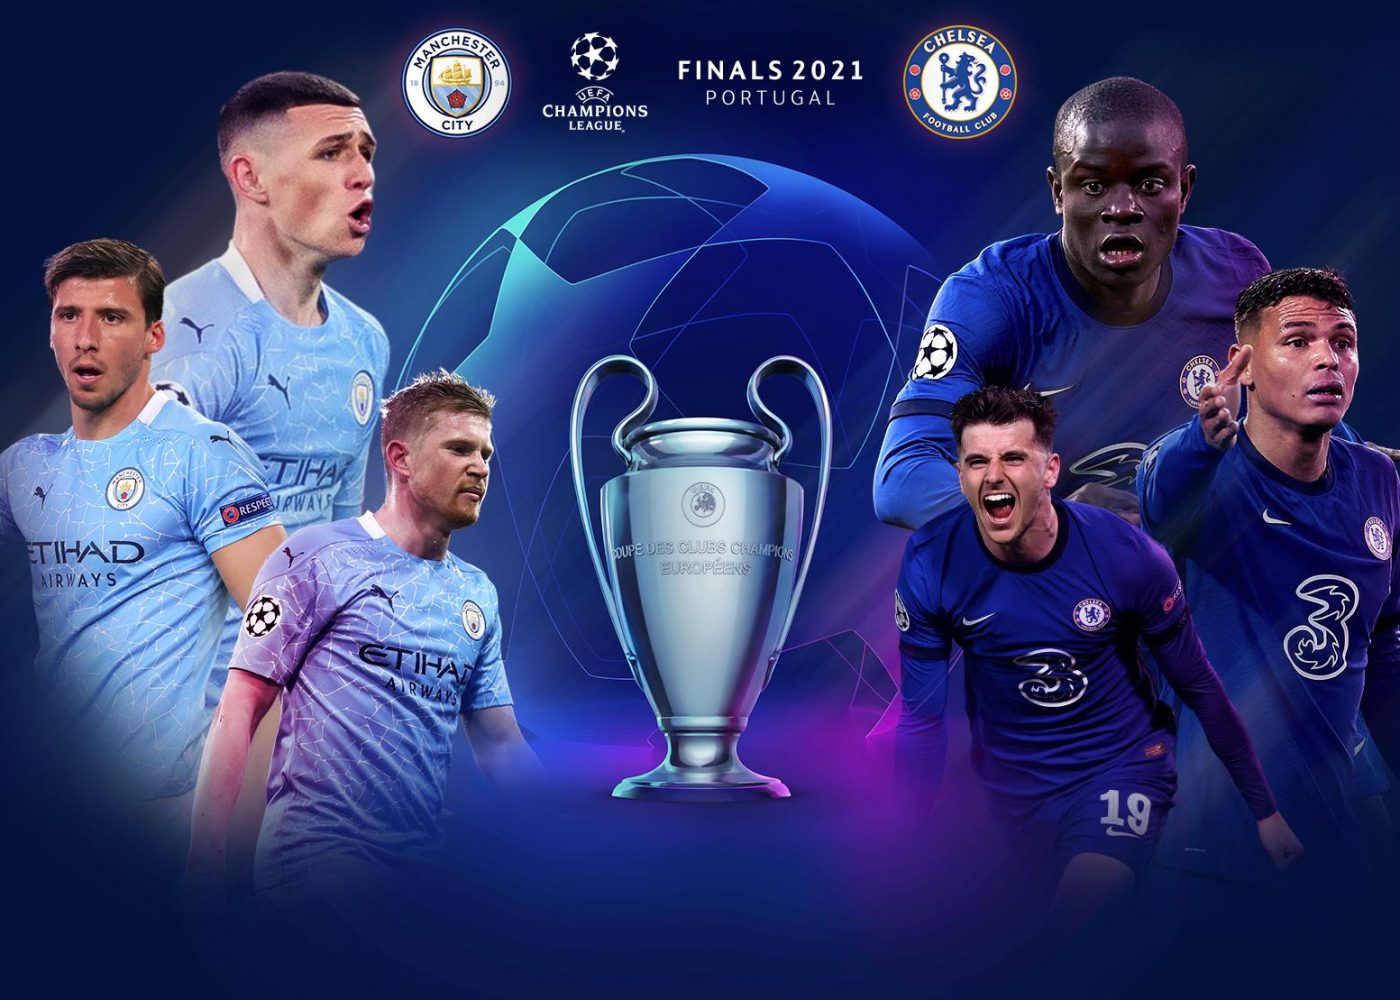 Nhận định Manchester City vs Chelsea 02h00 ngày 30/05/2021